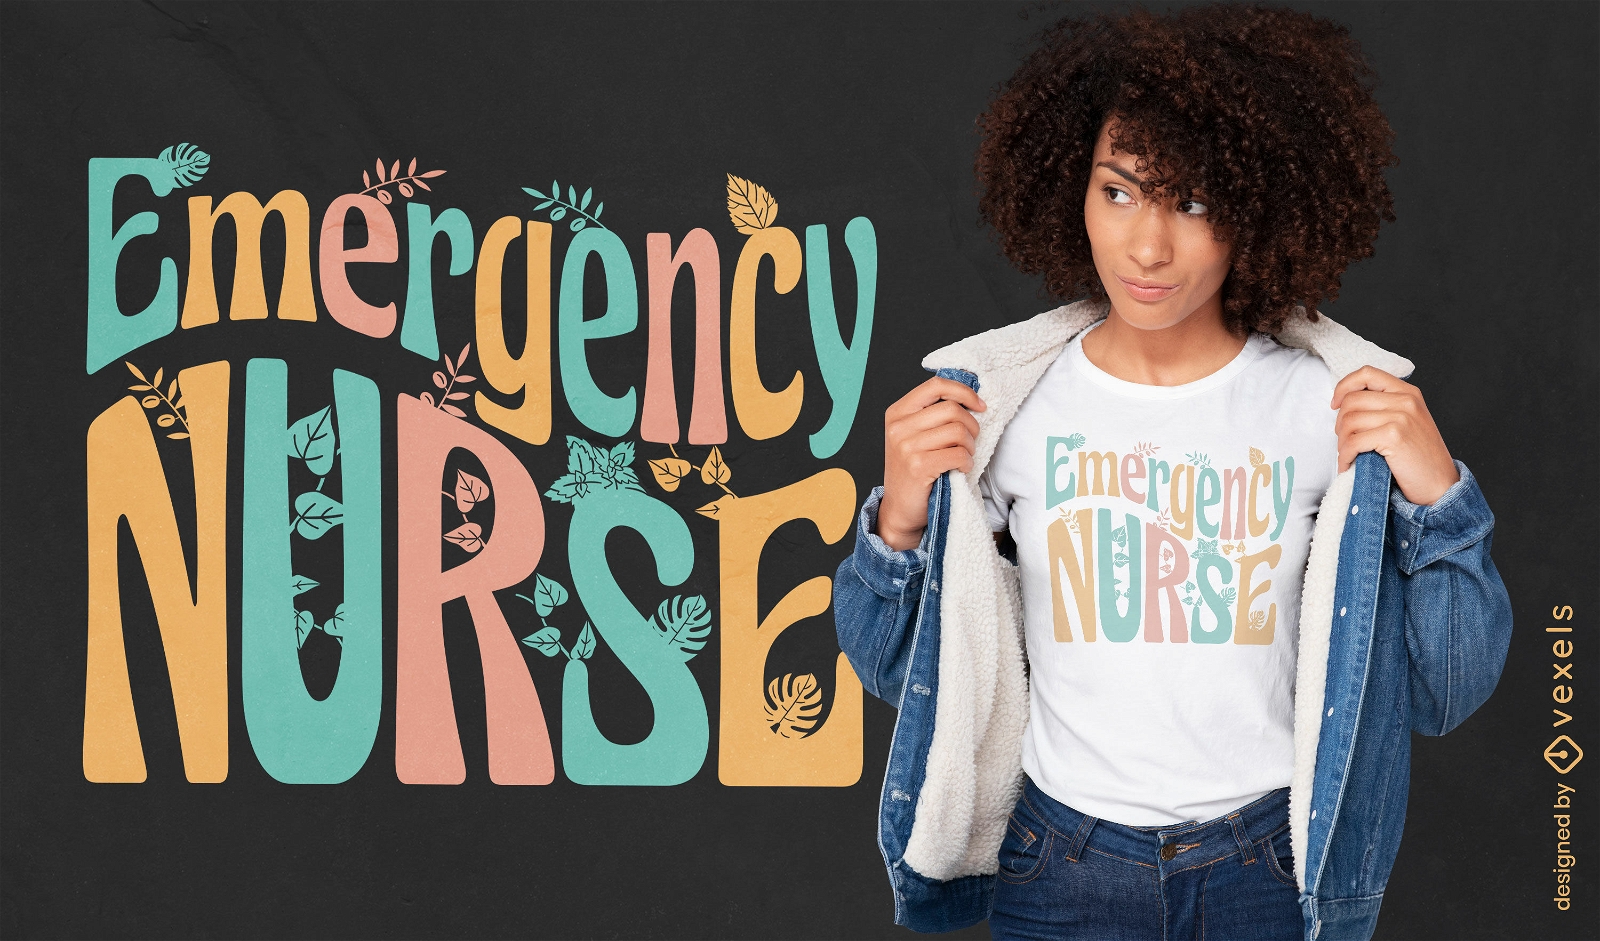 Dise?o de camiseta con letras de enfermera de emergencia.